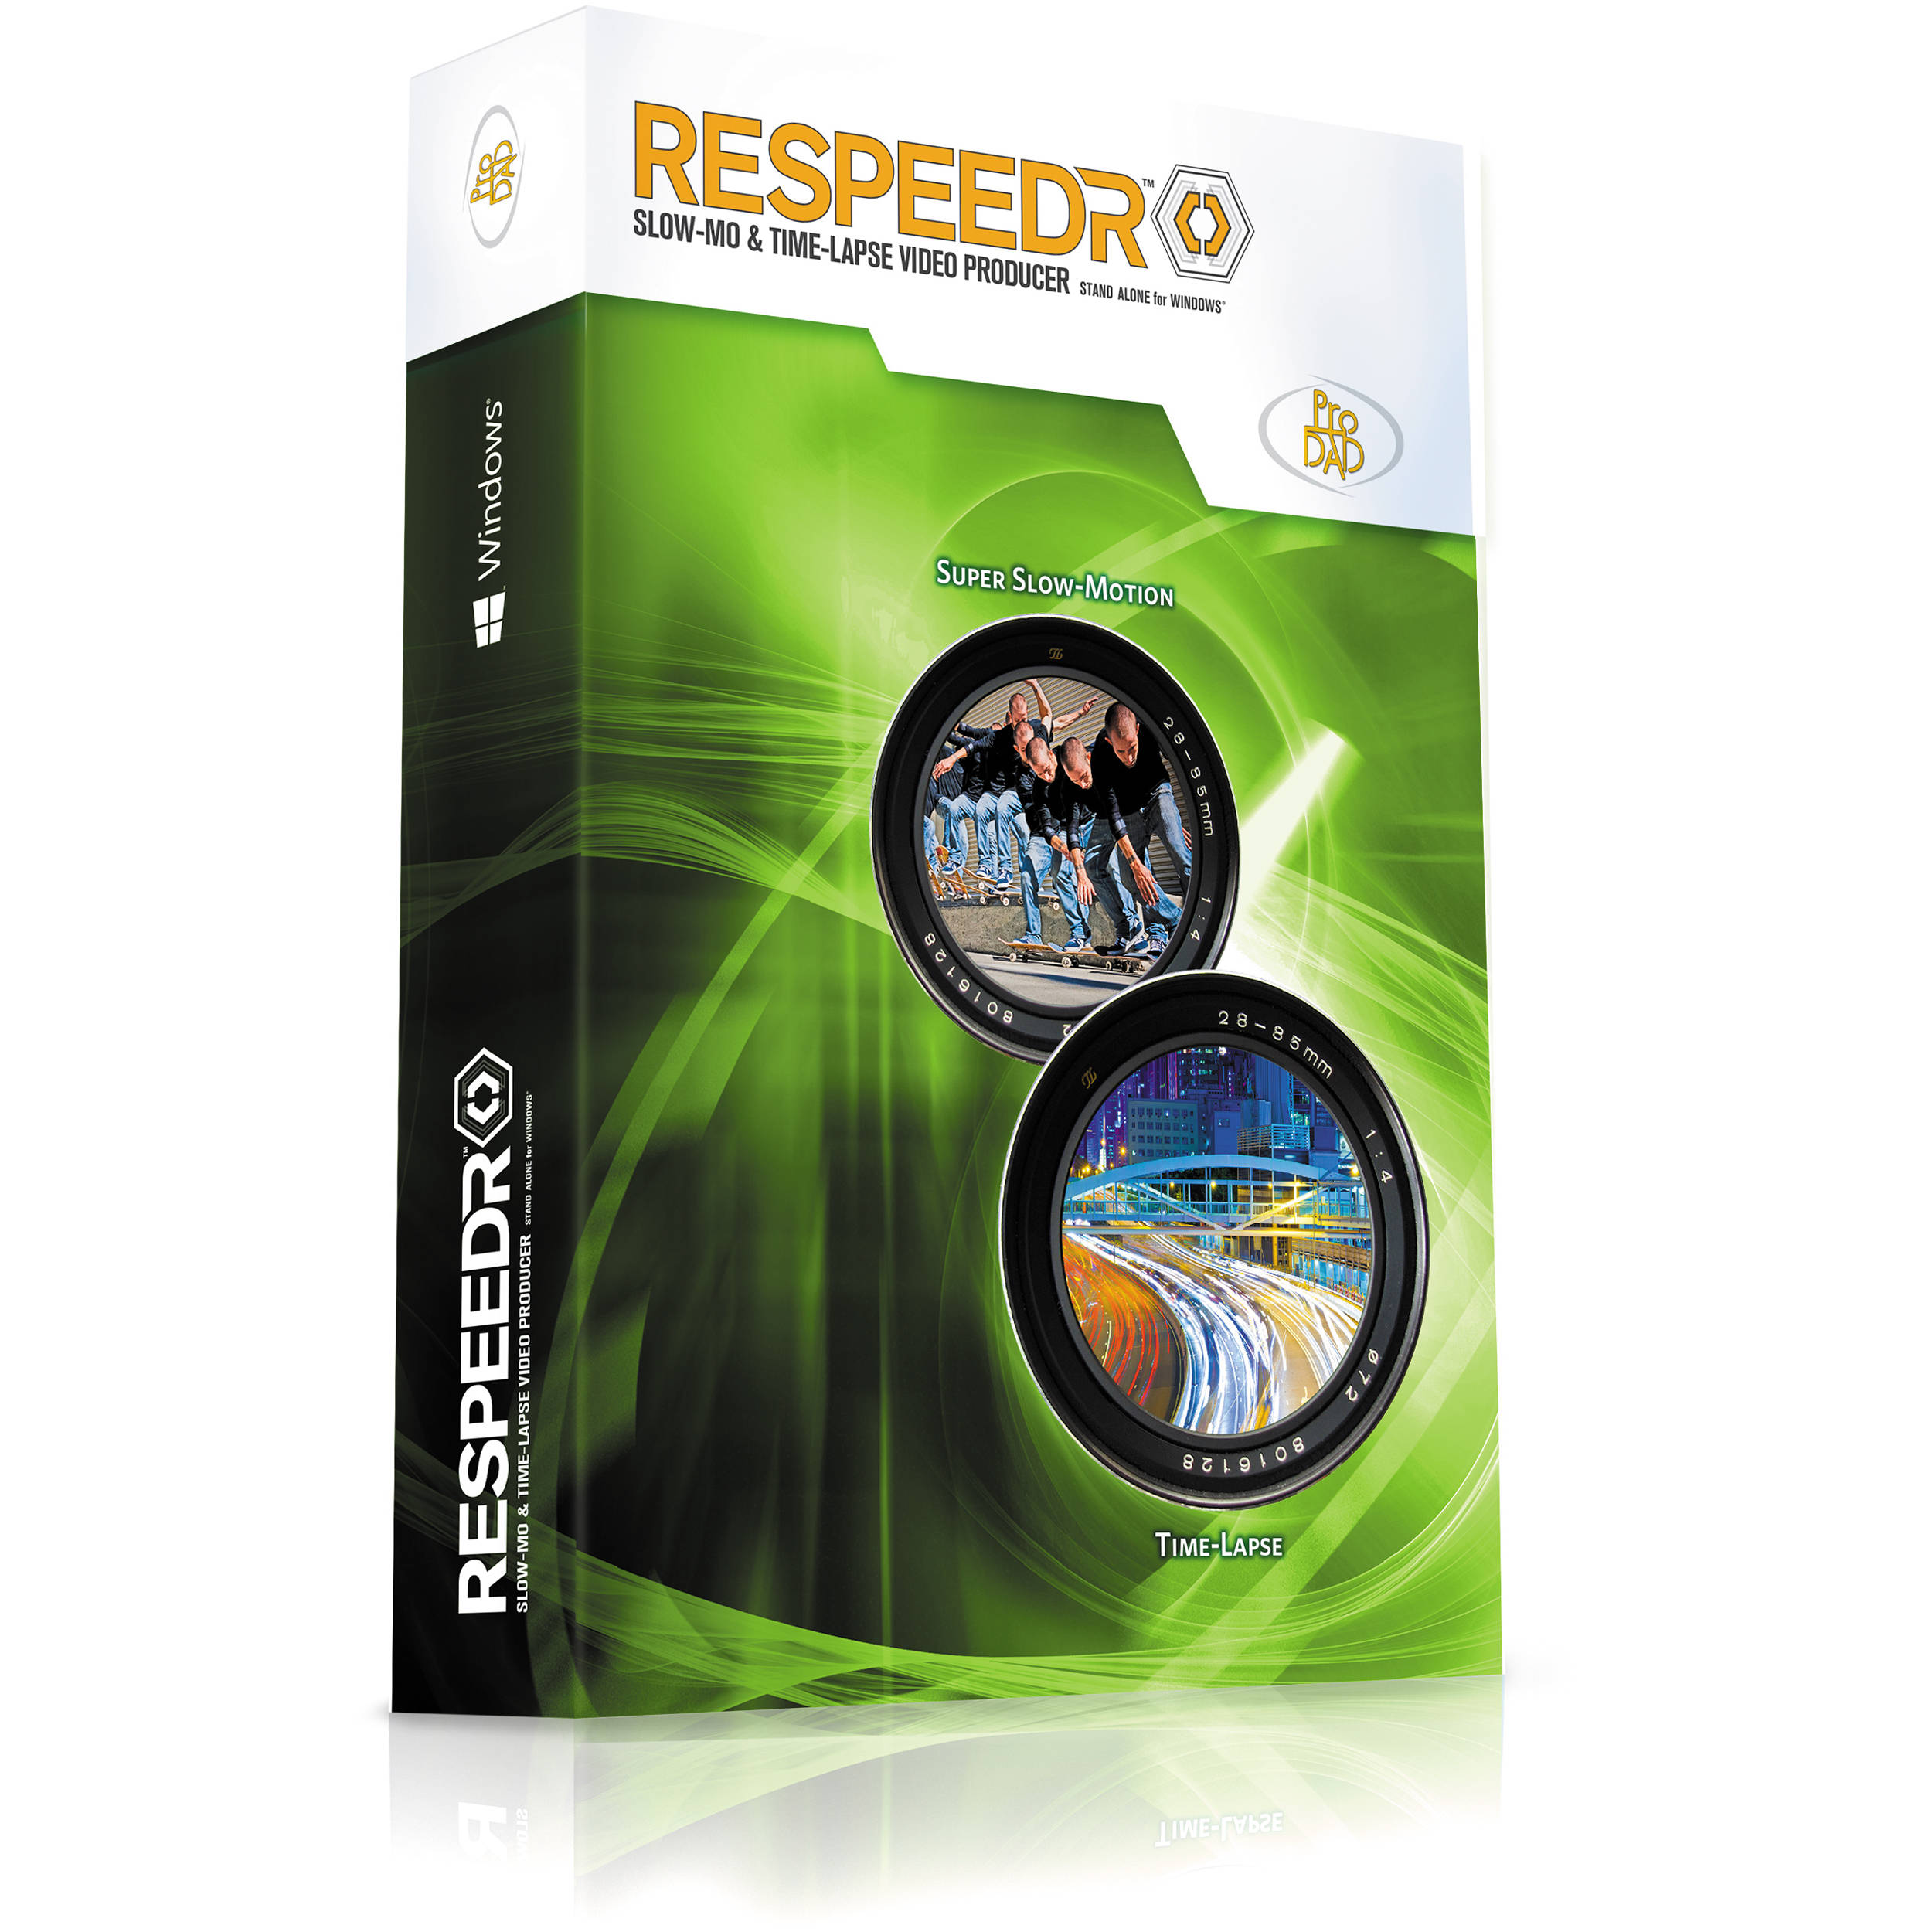 Buy proDAD ReSpeedr 1 64 bit